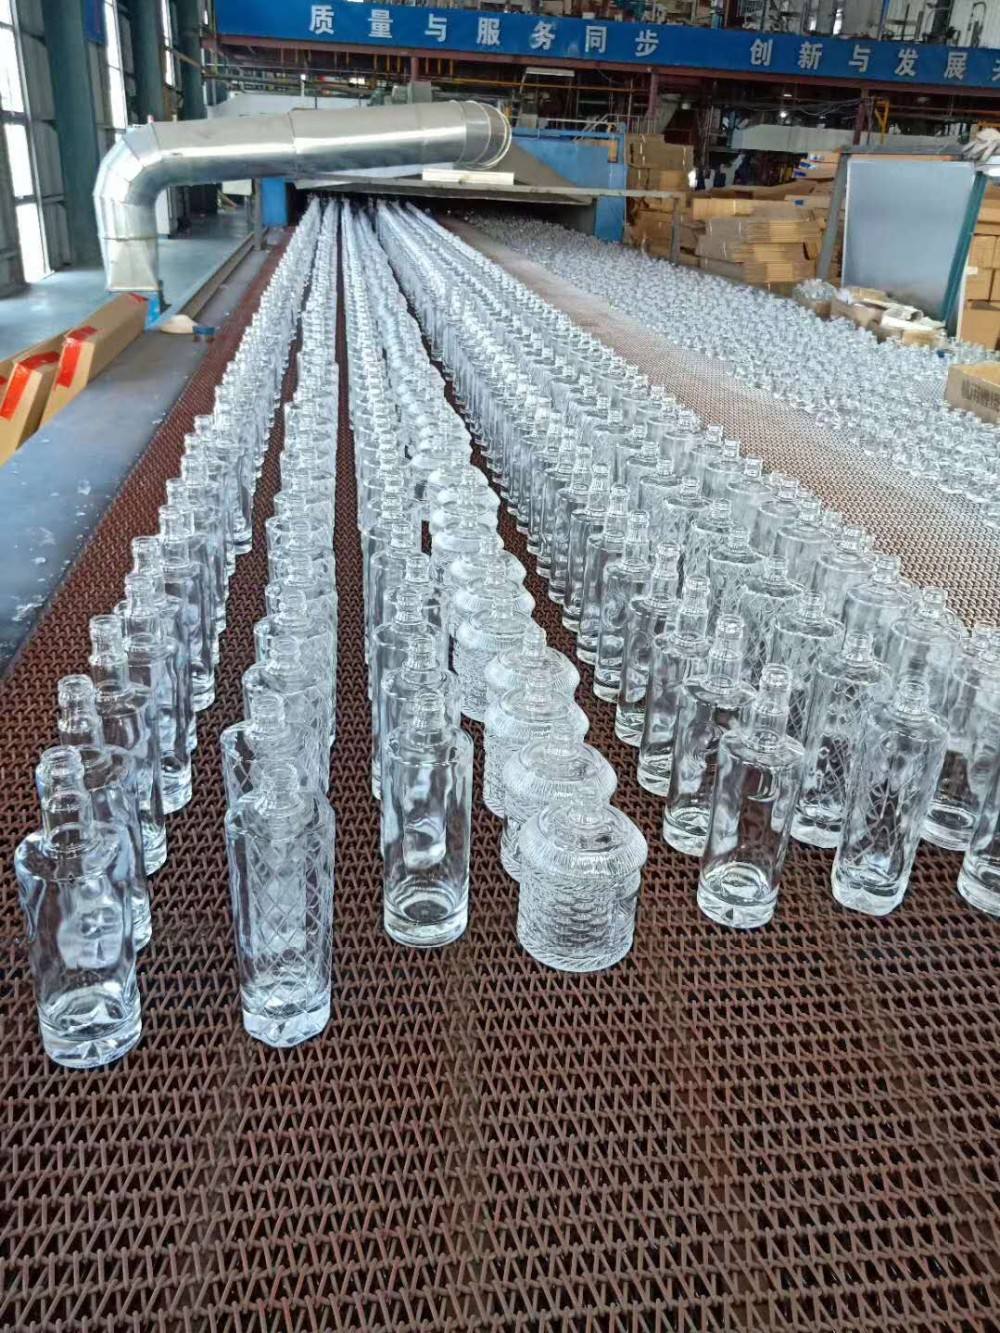 custom short neck vodka round 500ml glass bottle screw top glass bottle